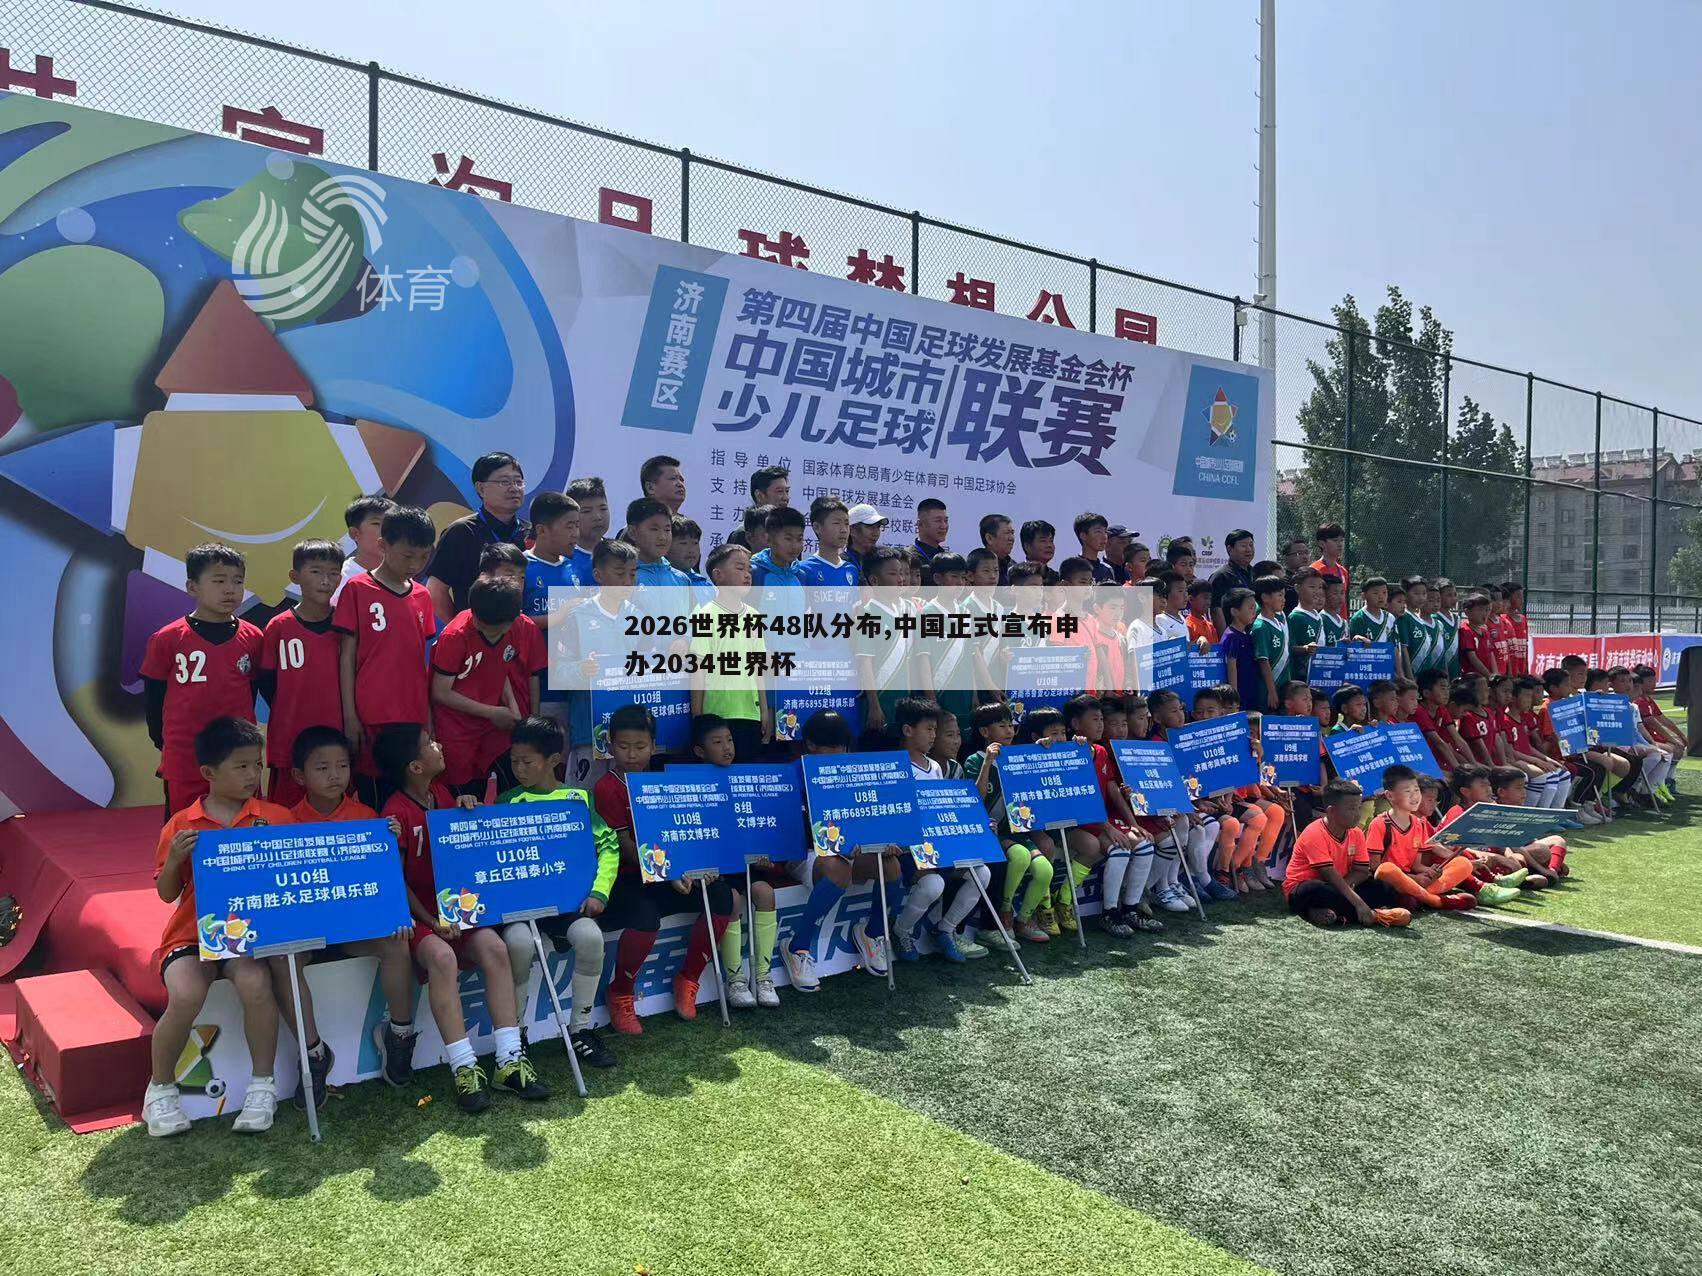 2026世界杯48队分布,中国正式宣布申办2034世界杯